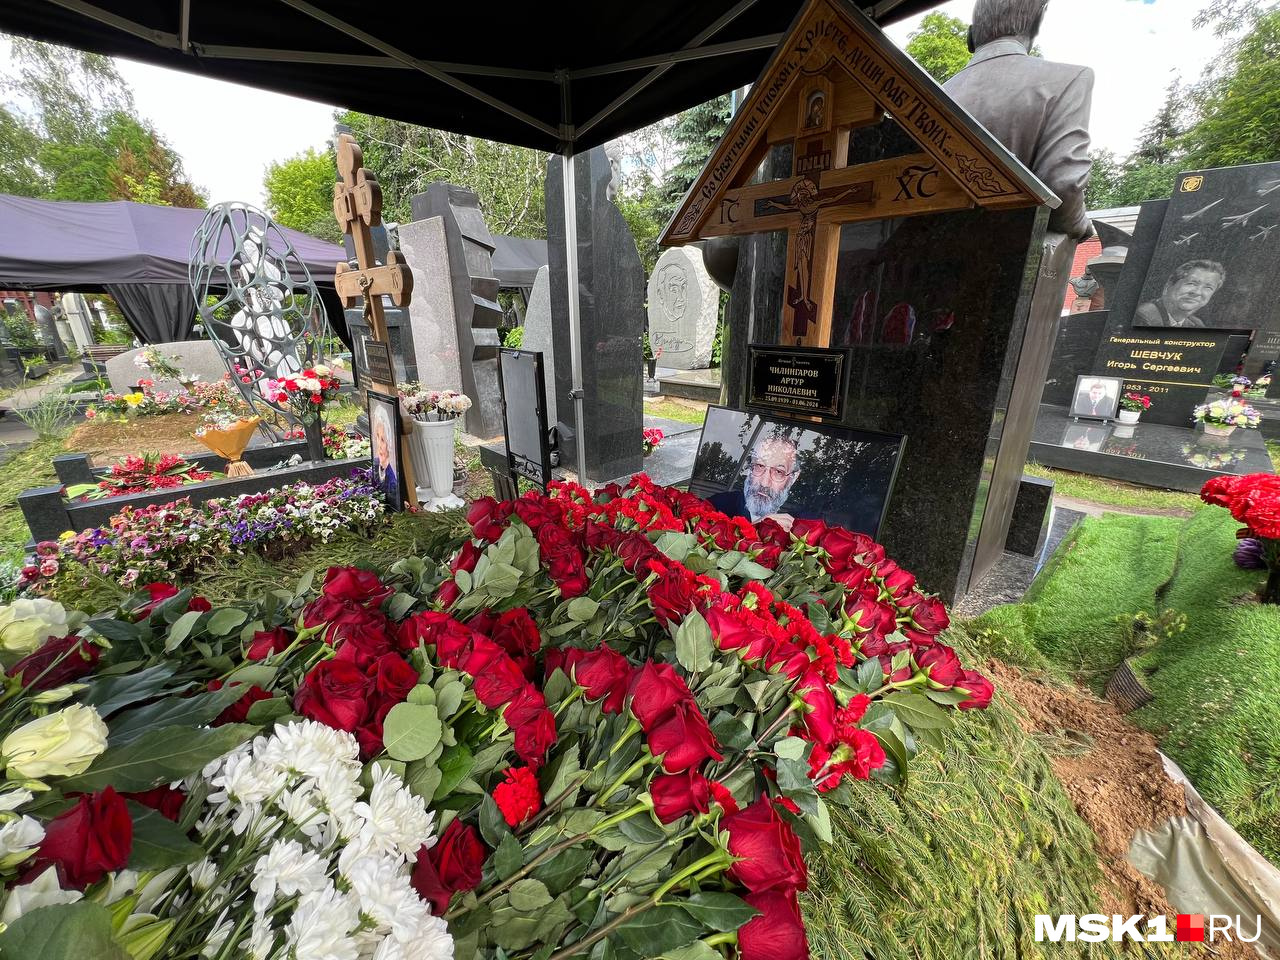 В Москве похоронили полярника и депутата от Красноярского края Артура Чилингарова — кто пришел на прощание, а кто прислал венок